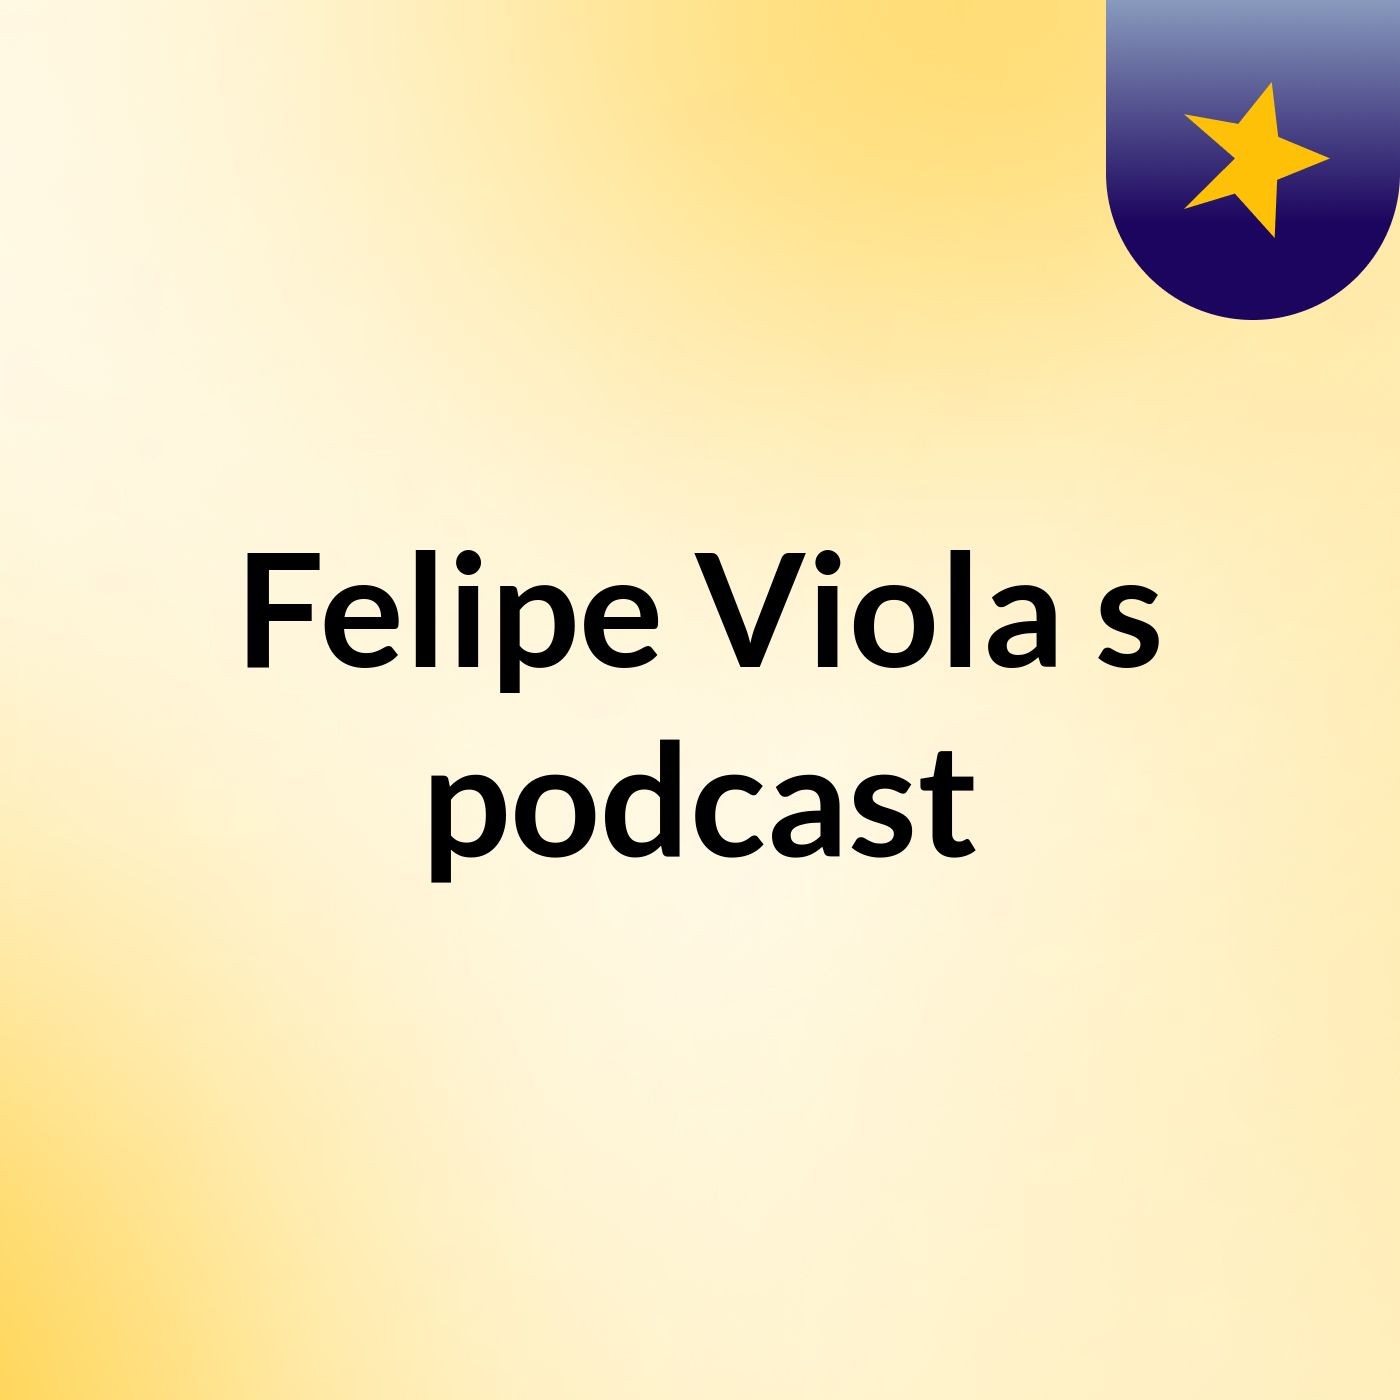 Felipe Viola's podcast